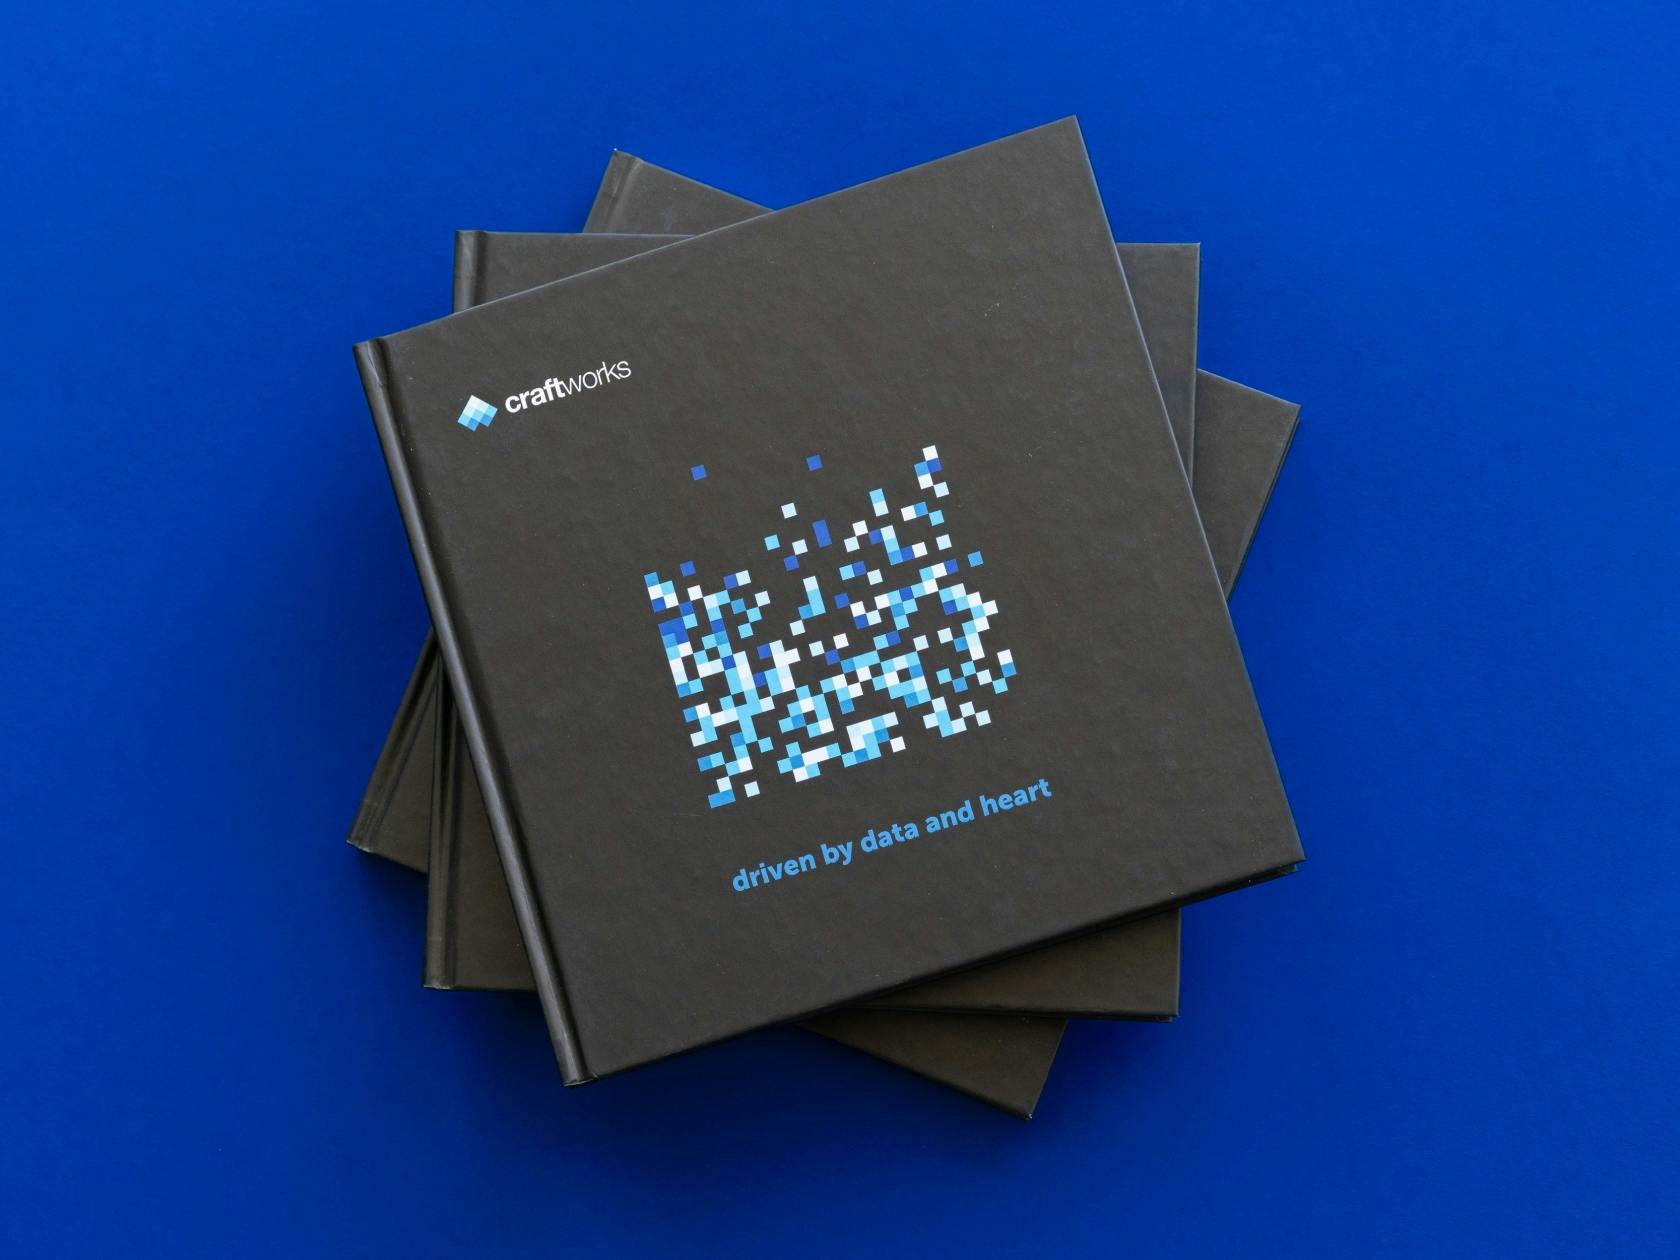 craftworks brand book, craftworks Logo auf schwarzem Hintergrund mit Pixel Pattern in Blautönen mit der headline: driven by data and heart © good matters